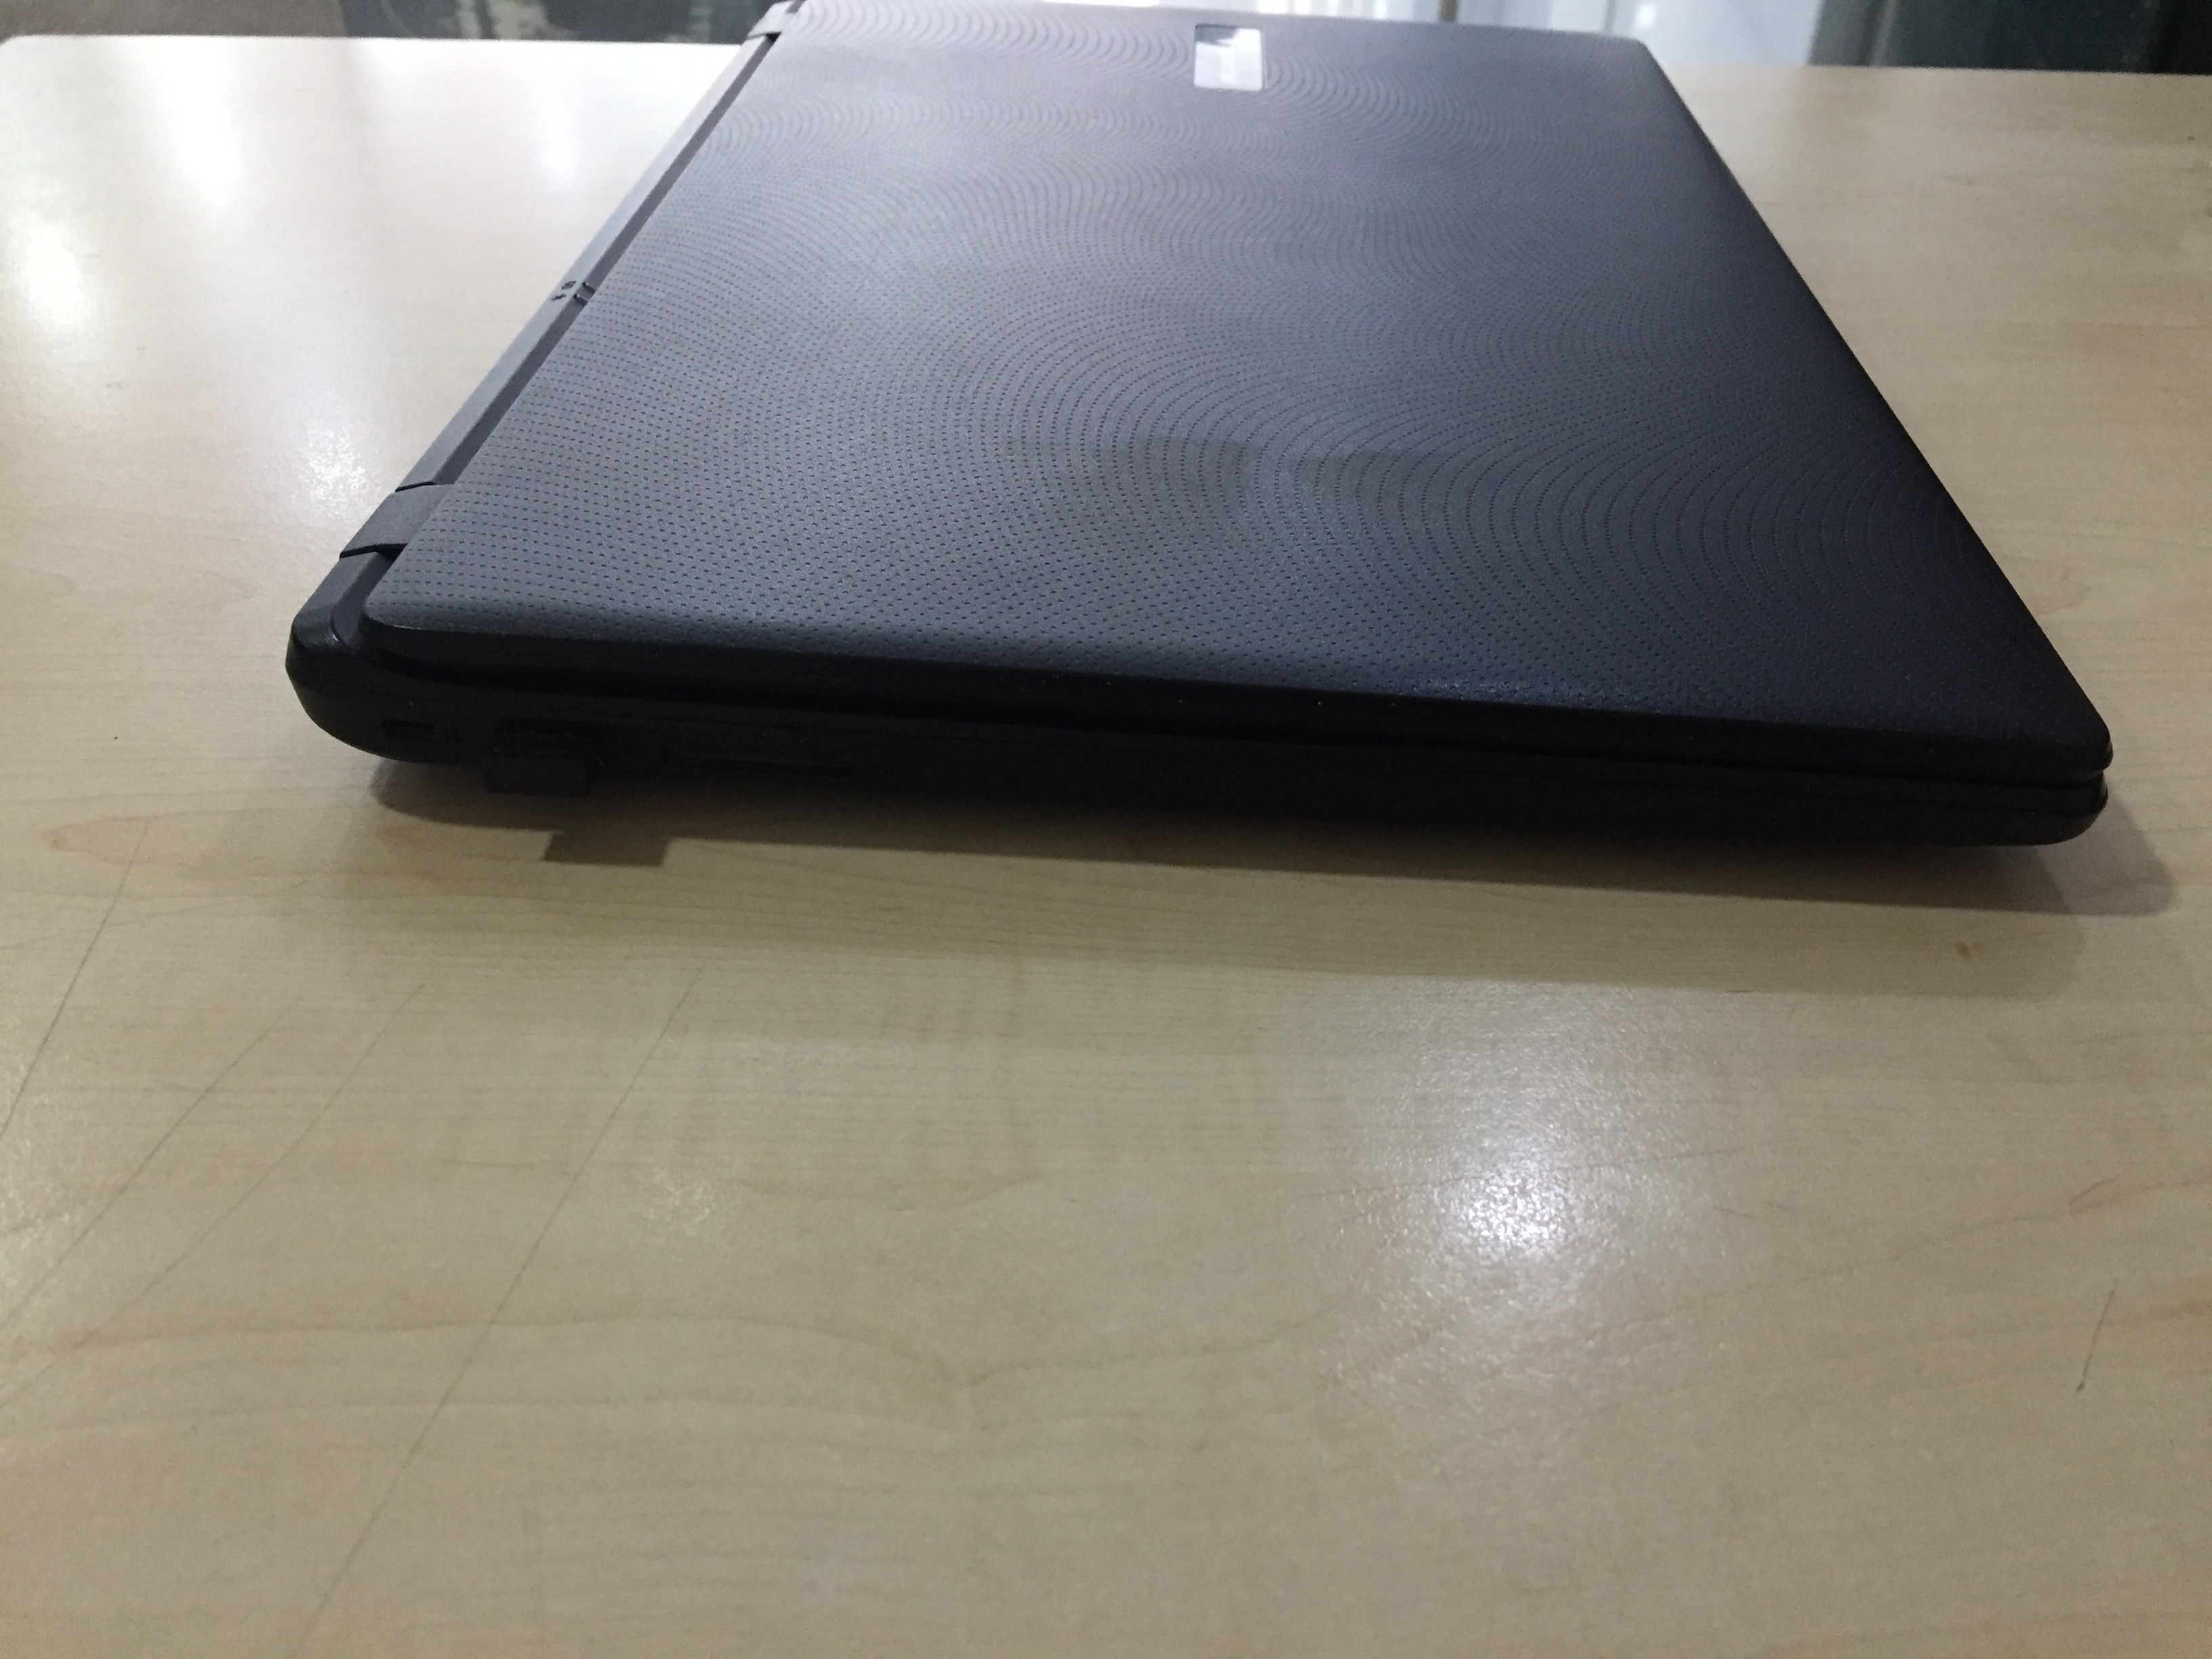 ( 2300 TL  ) Satılık PackardBell i5. 4. nesil Laptop / Minik Kusur Harici Tertemiz